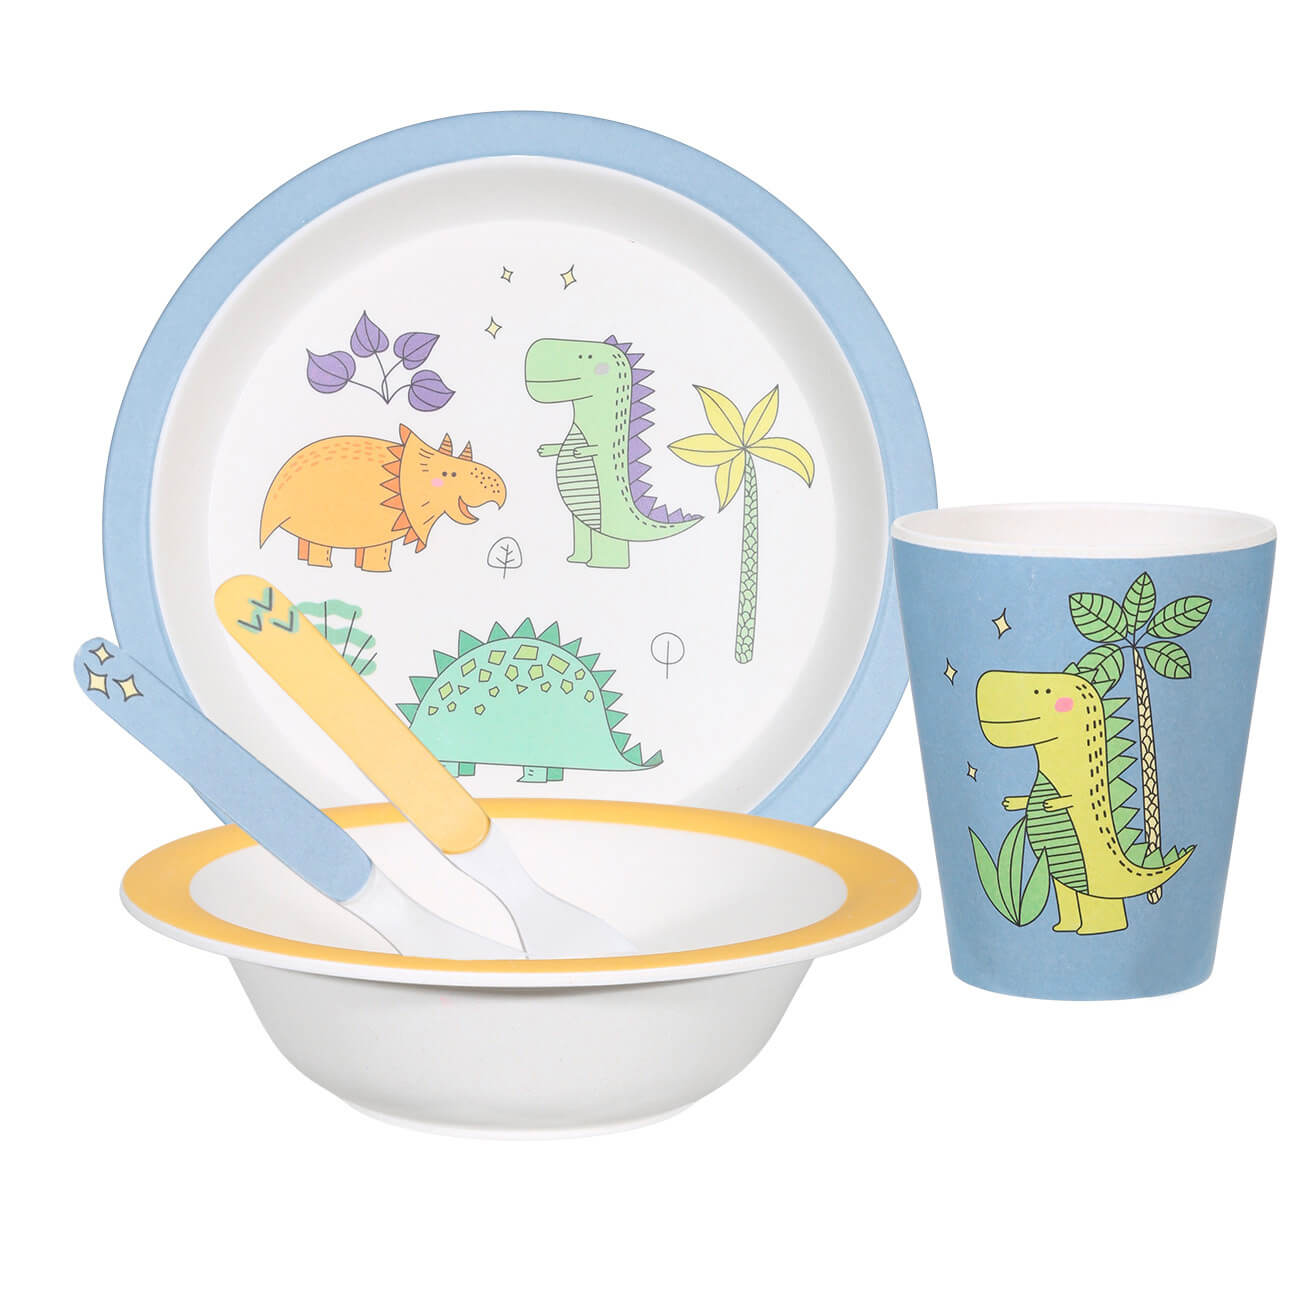 Набор посуды, детский, 5 пр, бамбук, желто-голубой, Динозавр, Dino столовые приборы детские 1 перс 2 пр бамбук голубые динозавр dino